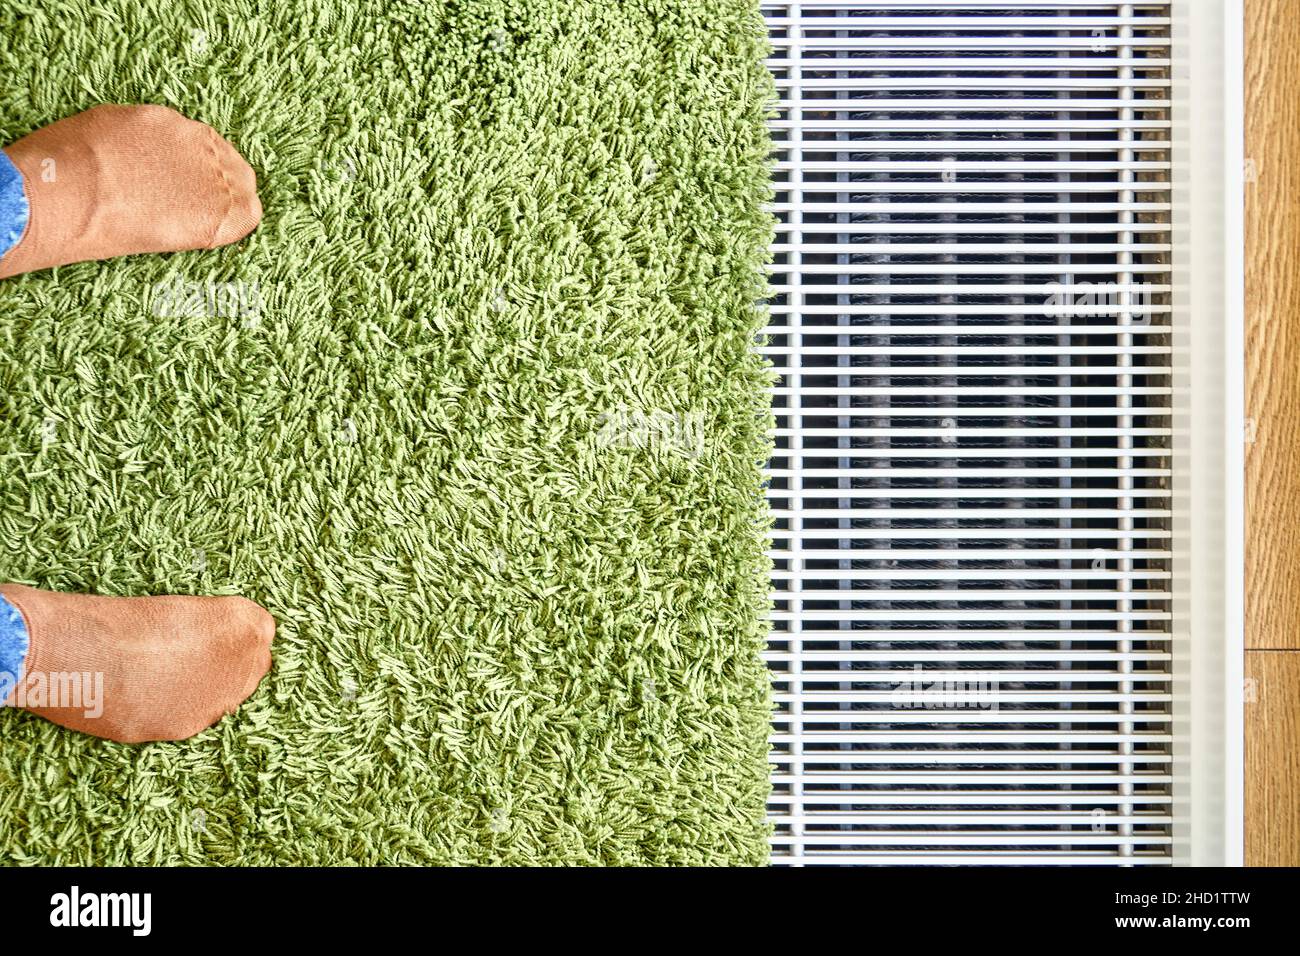 Moderner Wasser-Fußbodenwärmekonvektor in der Nähe des Panoramafensters mit grünem Teppich und Füßen in orangefarbenen Socken aus der oberen Ansicht installiert Stockfoto